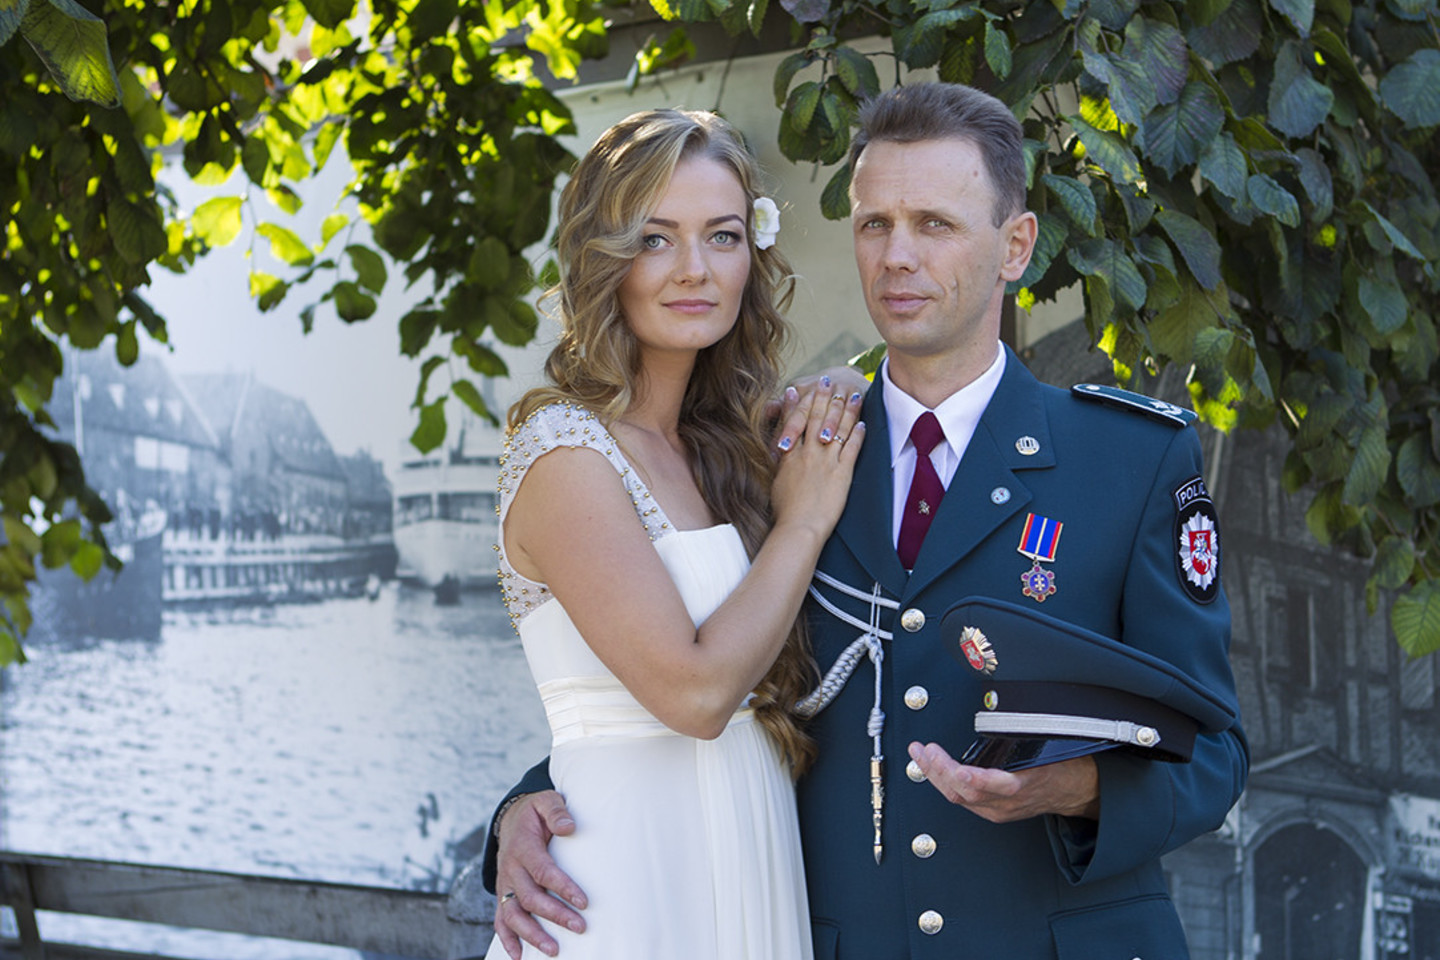 S.Olšauskas minčiai per vestuves pasipuošti policininko uniforma pritarė ir žmona Skaitė.